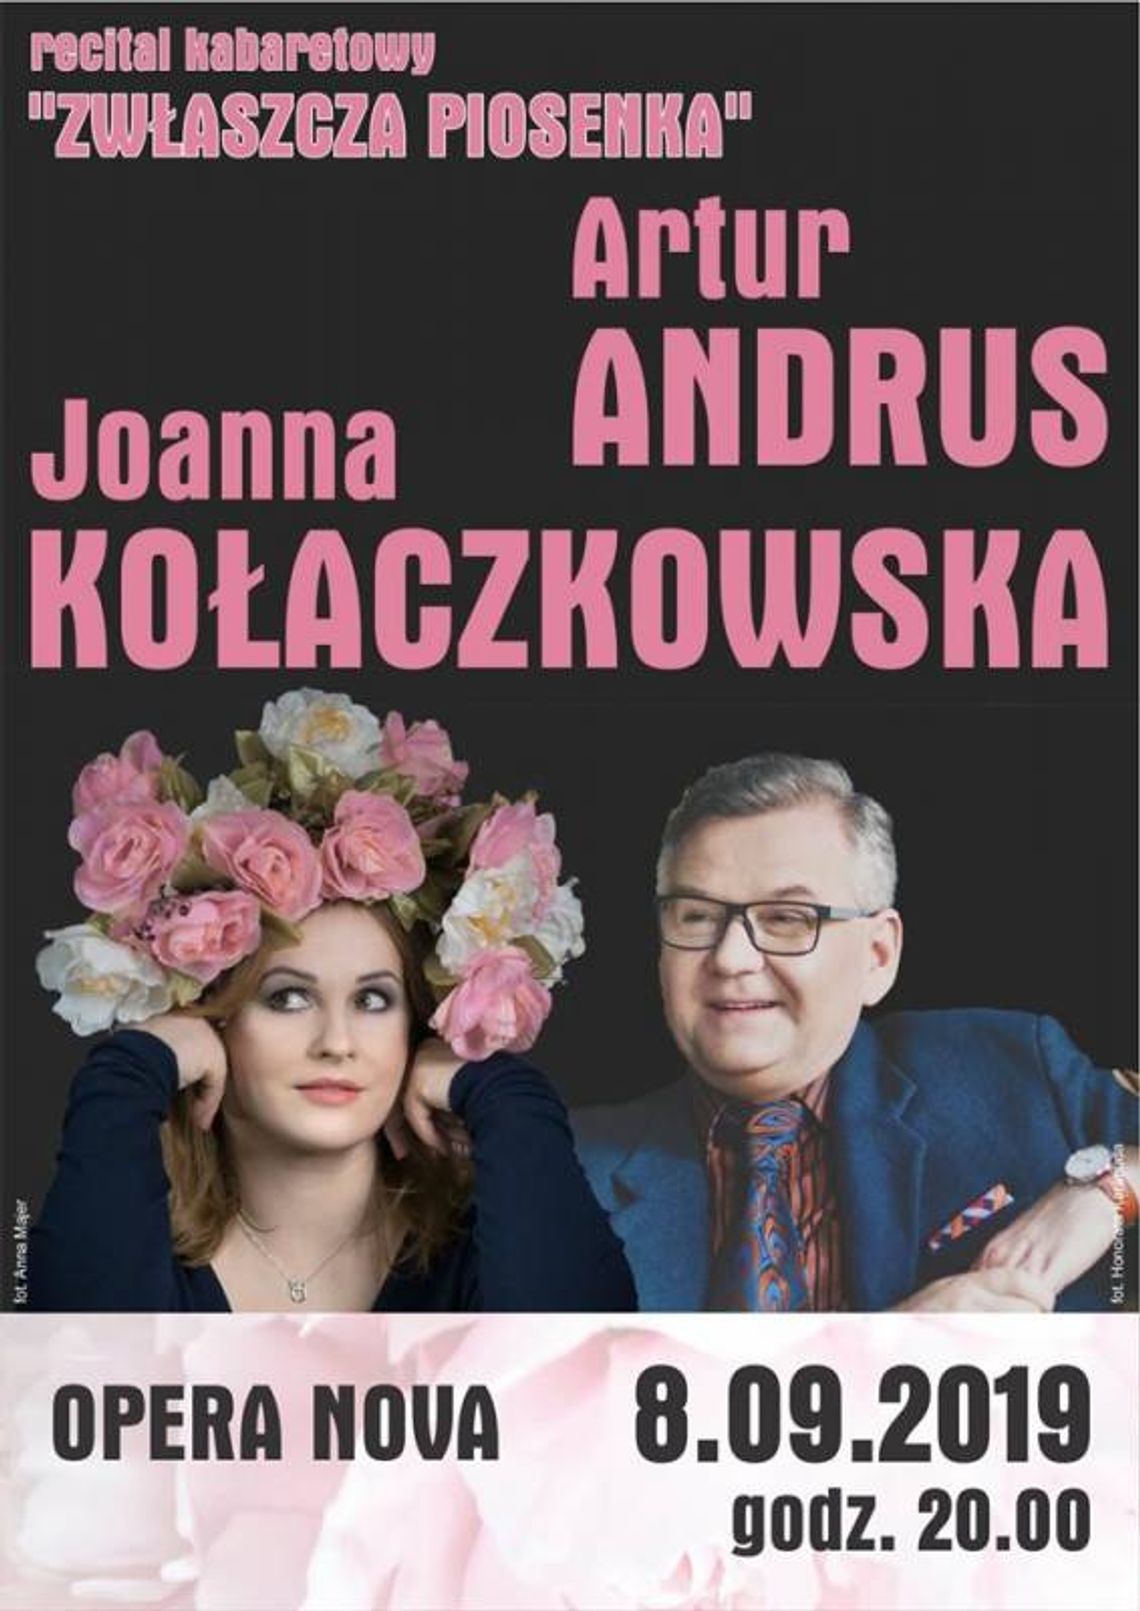 J. Kołaczkowska i A.Andrus "Zwłaszcza piosenka"